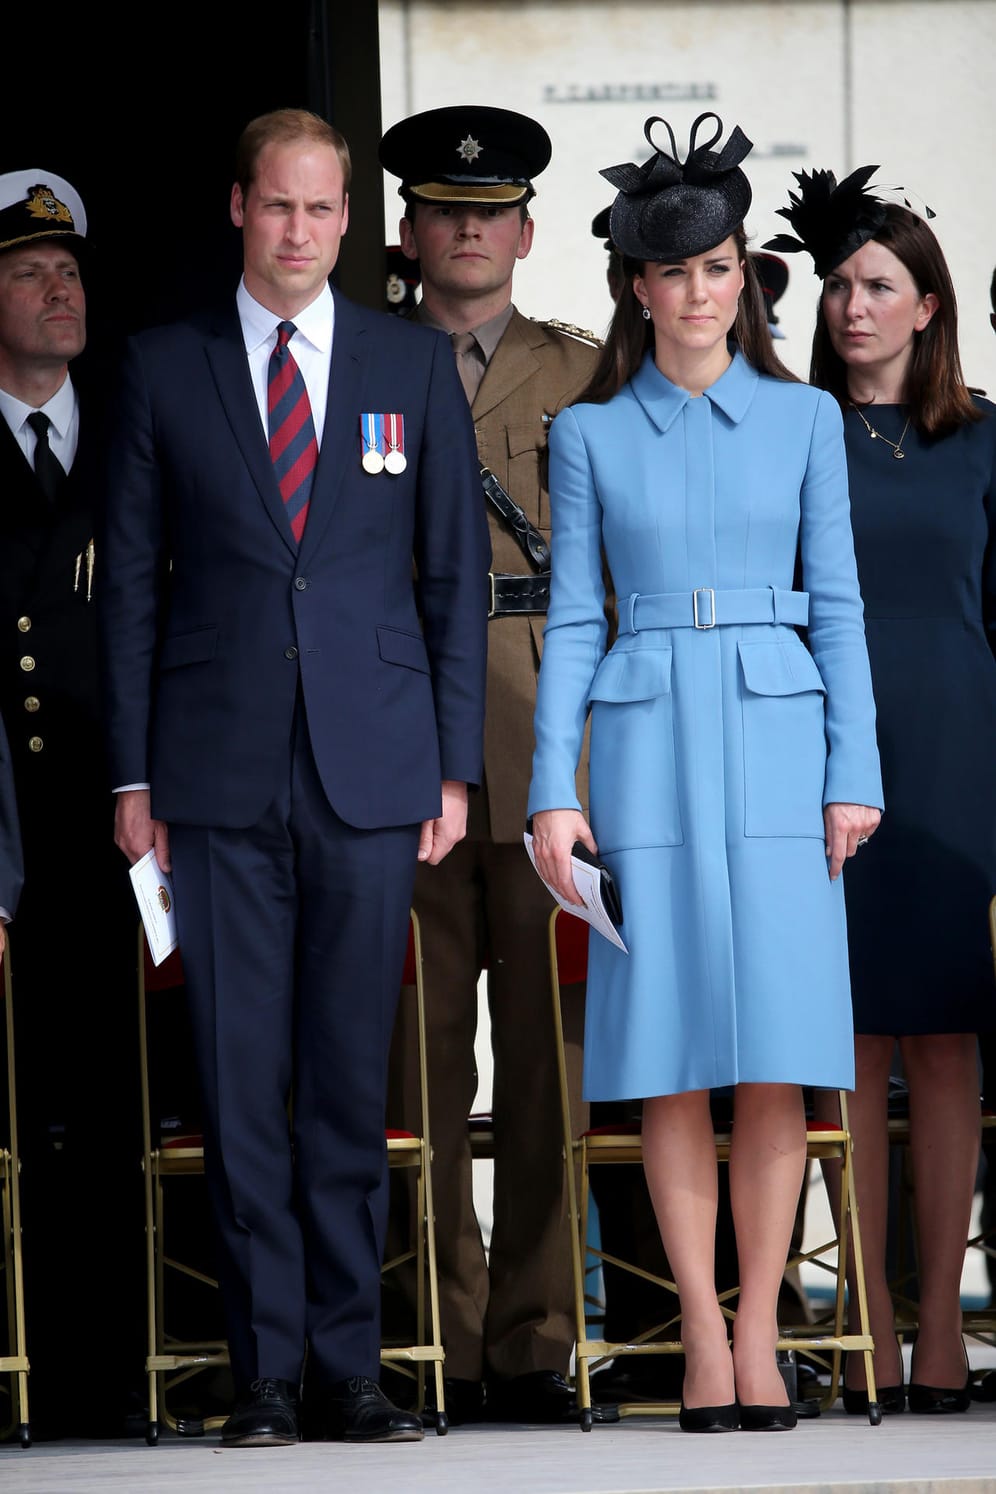 Juni 2014: Wiliam und Kate bei der Feier zum 70. Jahrestag des D-Days, die Herzogin präsentiert den blauen Mantel zum zweiten Mal.